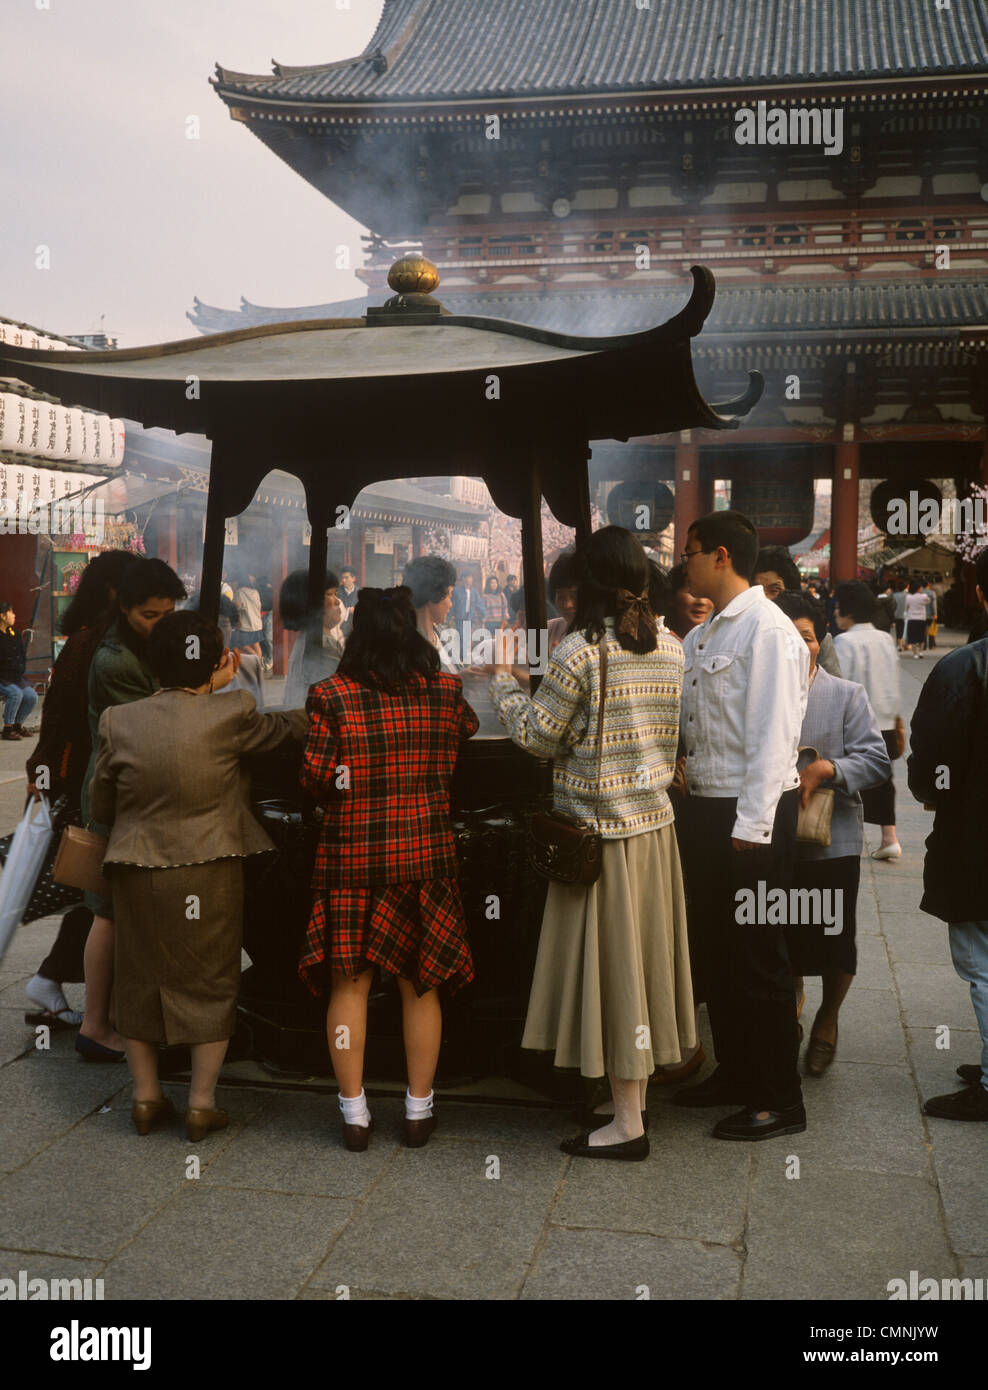 Japon Tokyo Asakusa Kannon offrant de l'encens et la fumée qui s'échappent Banque D'Images